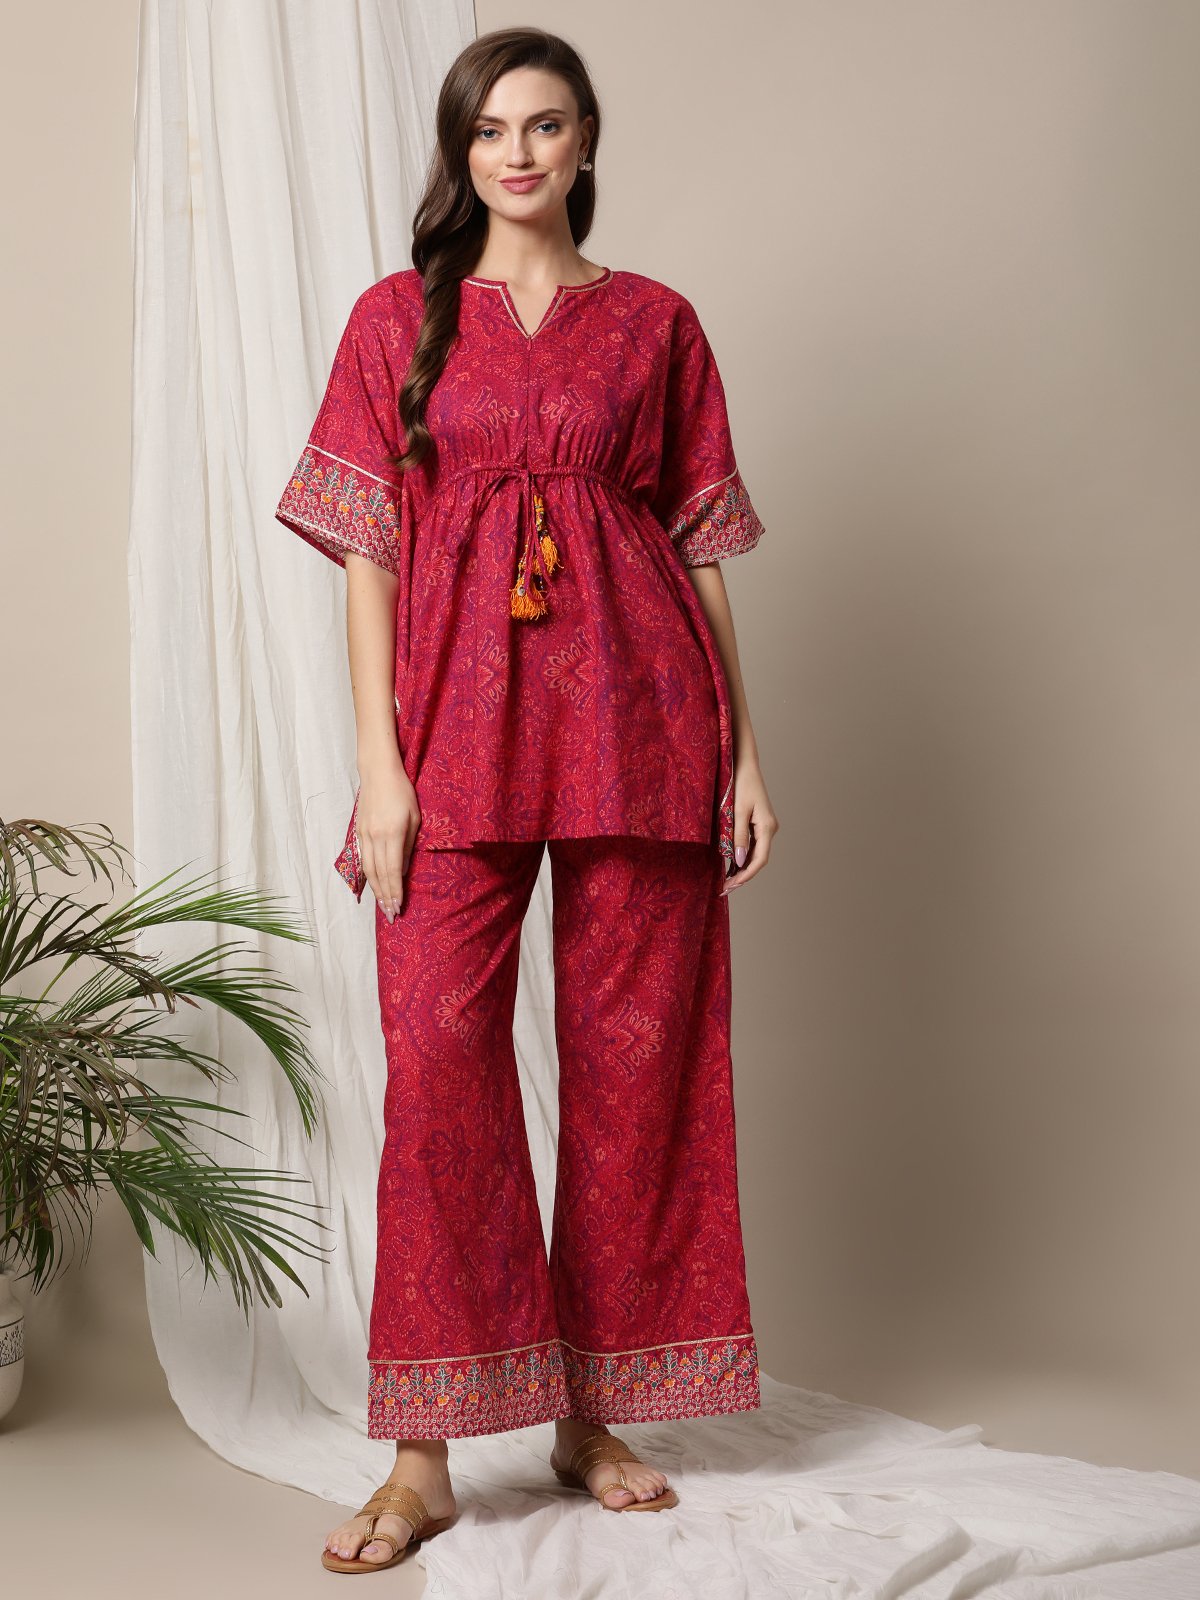 Premium Reyon slub printed kurti and palazzo pants set – Shopin Di Apparels